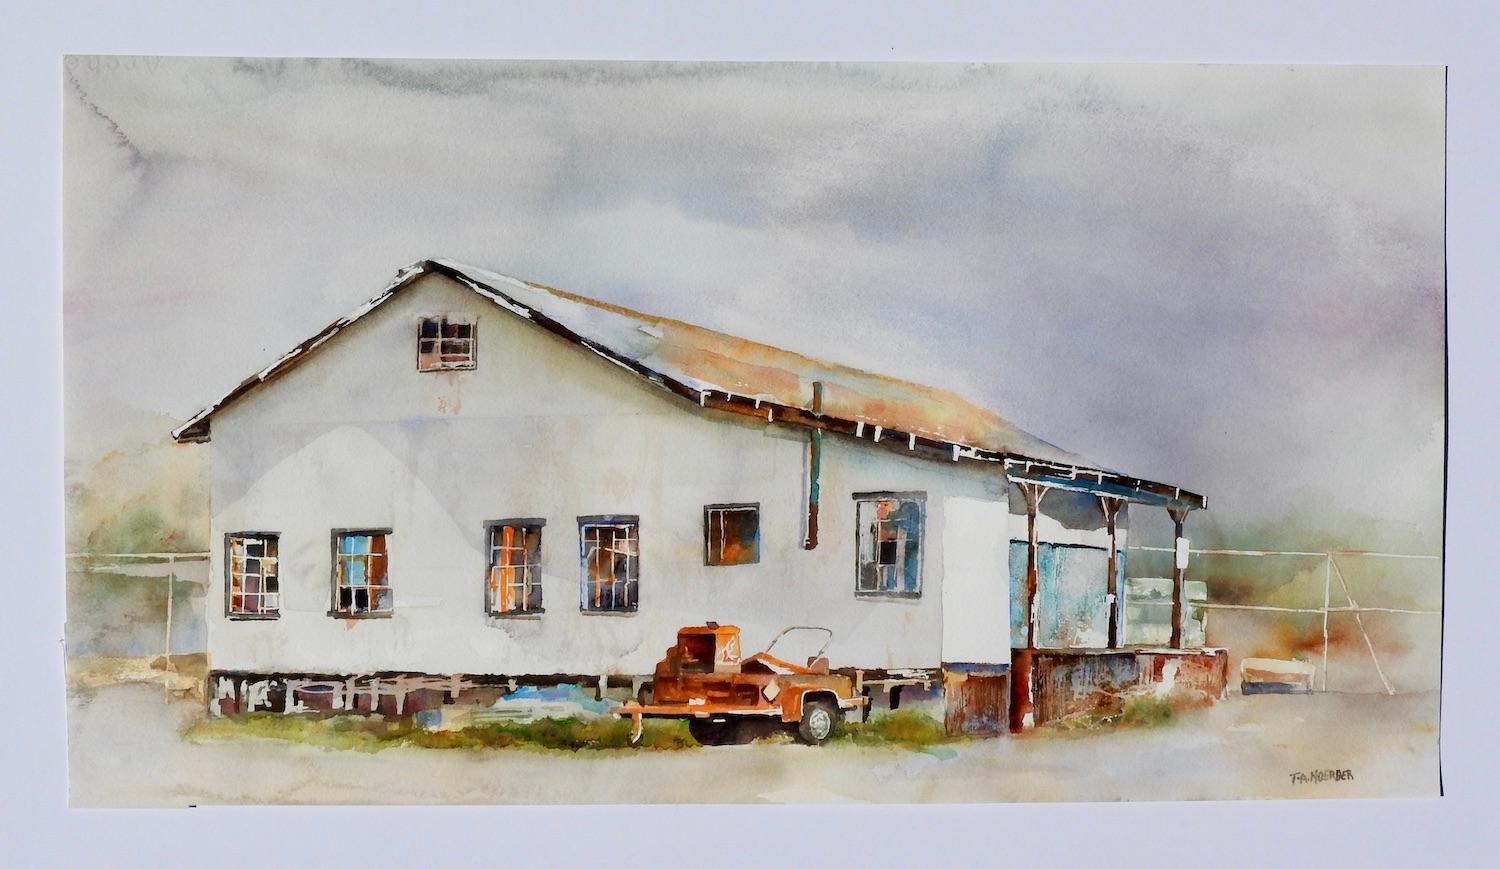 <p>Kommentare des Künstlers<br>Ein verlassenes Lagerhaus steht ruhig an den Seitenstraßen von Camarillo, Kalifornien. Trotz des grauen, bedeckten Tages zeigt das Gebäude immer noch faszinierende Farben. Die stillgelegten Geräte tragen zur Neugierde